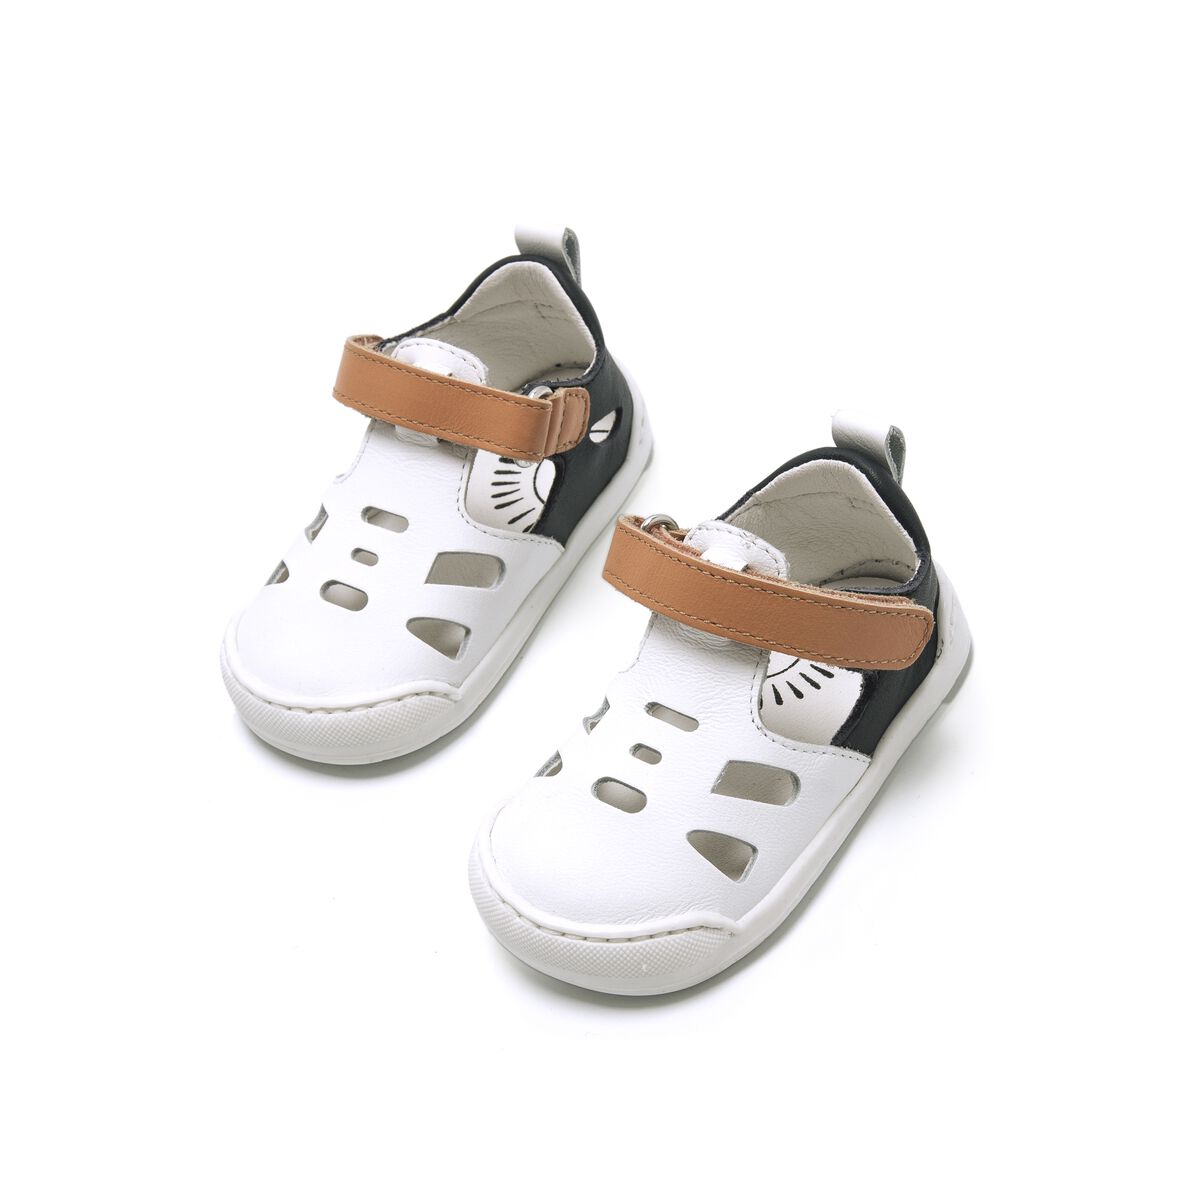 Sandalias de Nino modelo FREE BABY de MTNG image number 4